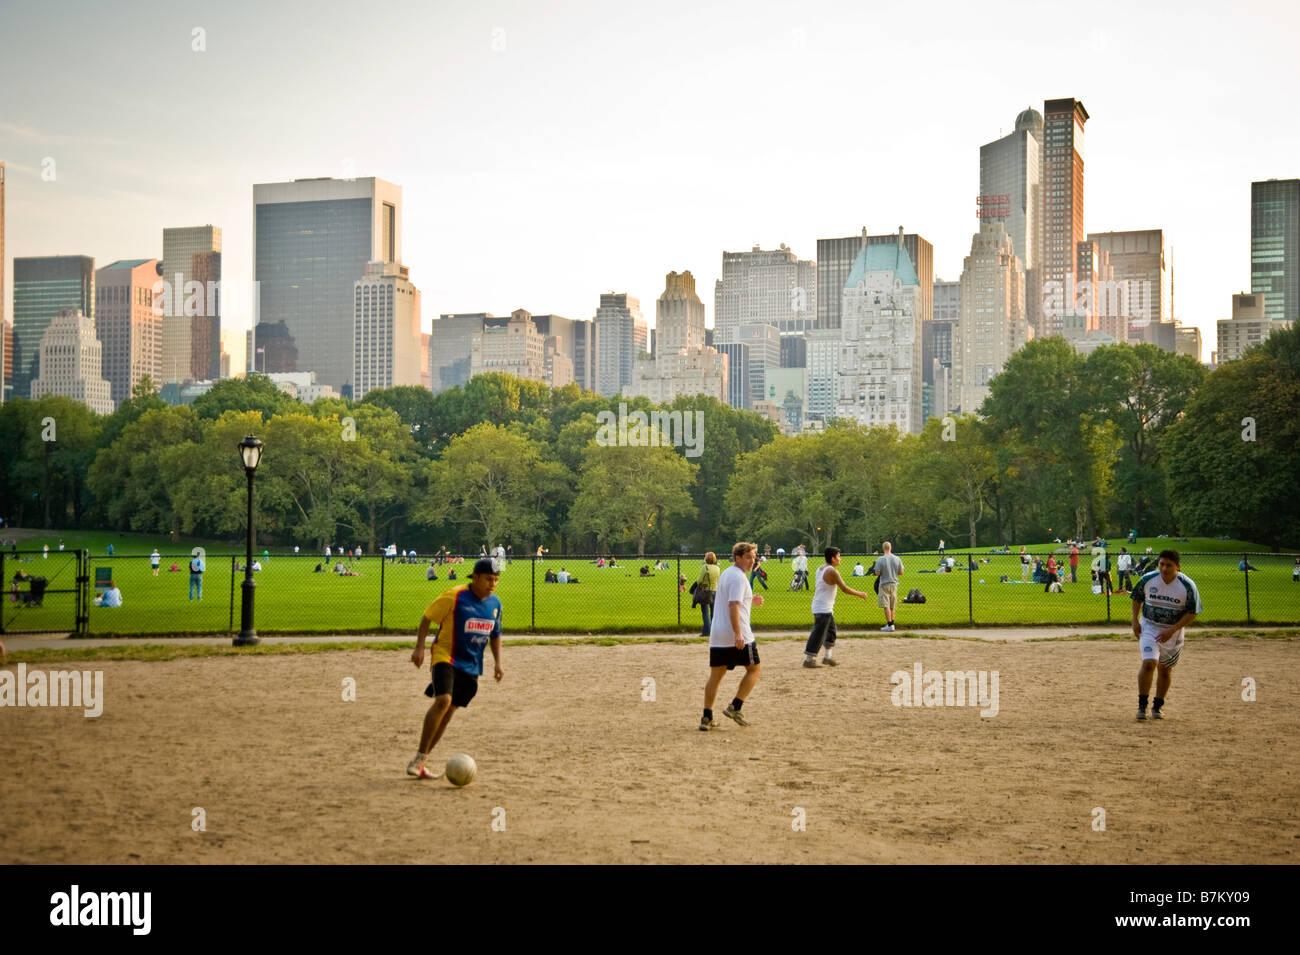 Sonntag Fußballspiel im Central Park, New York Stockfotografie - Alamy